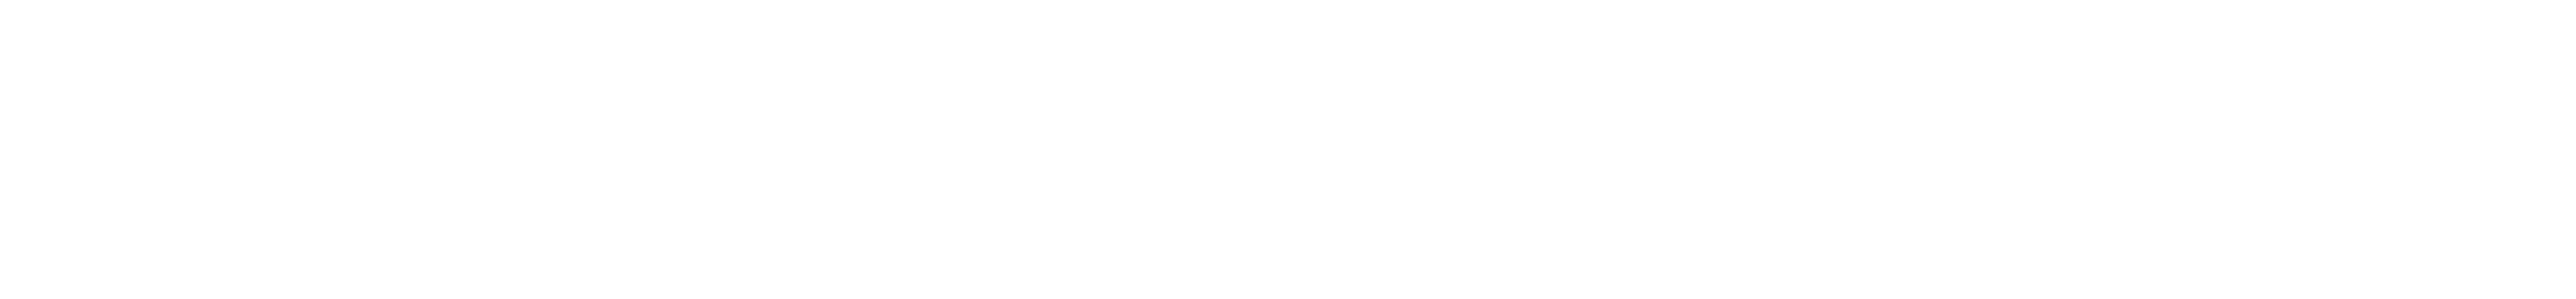 toimialadata-logo